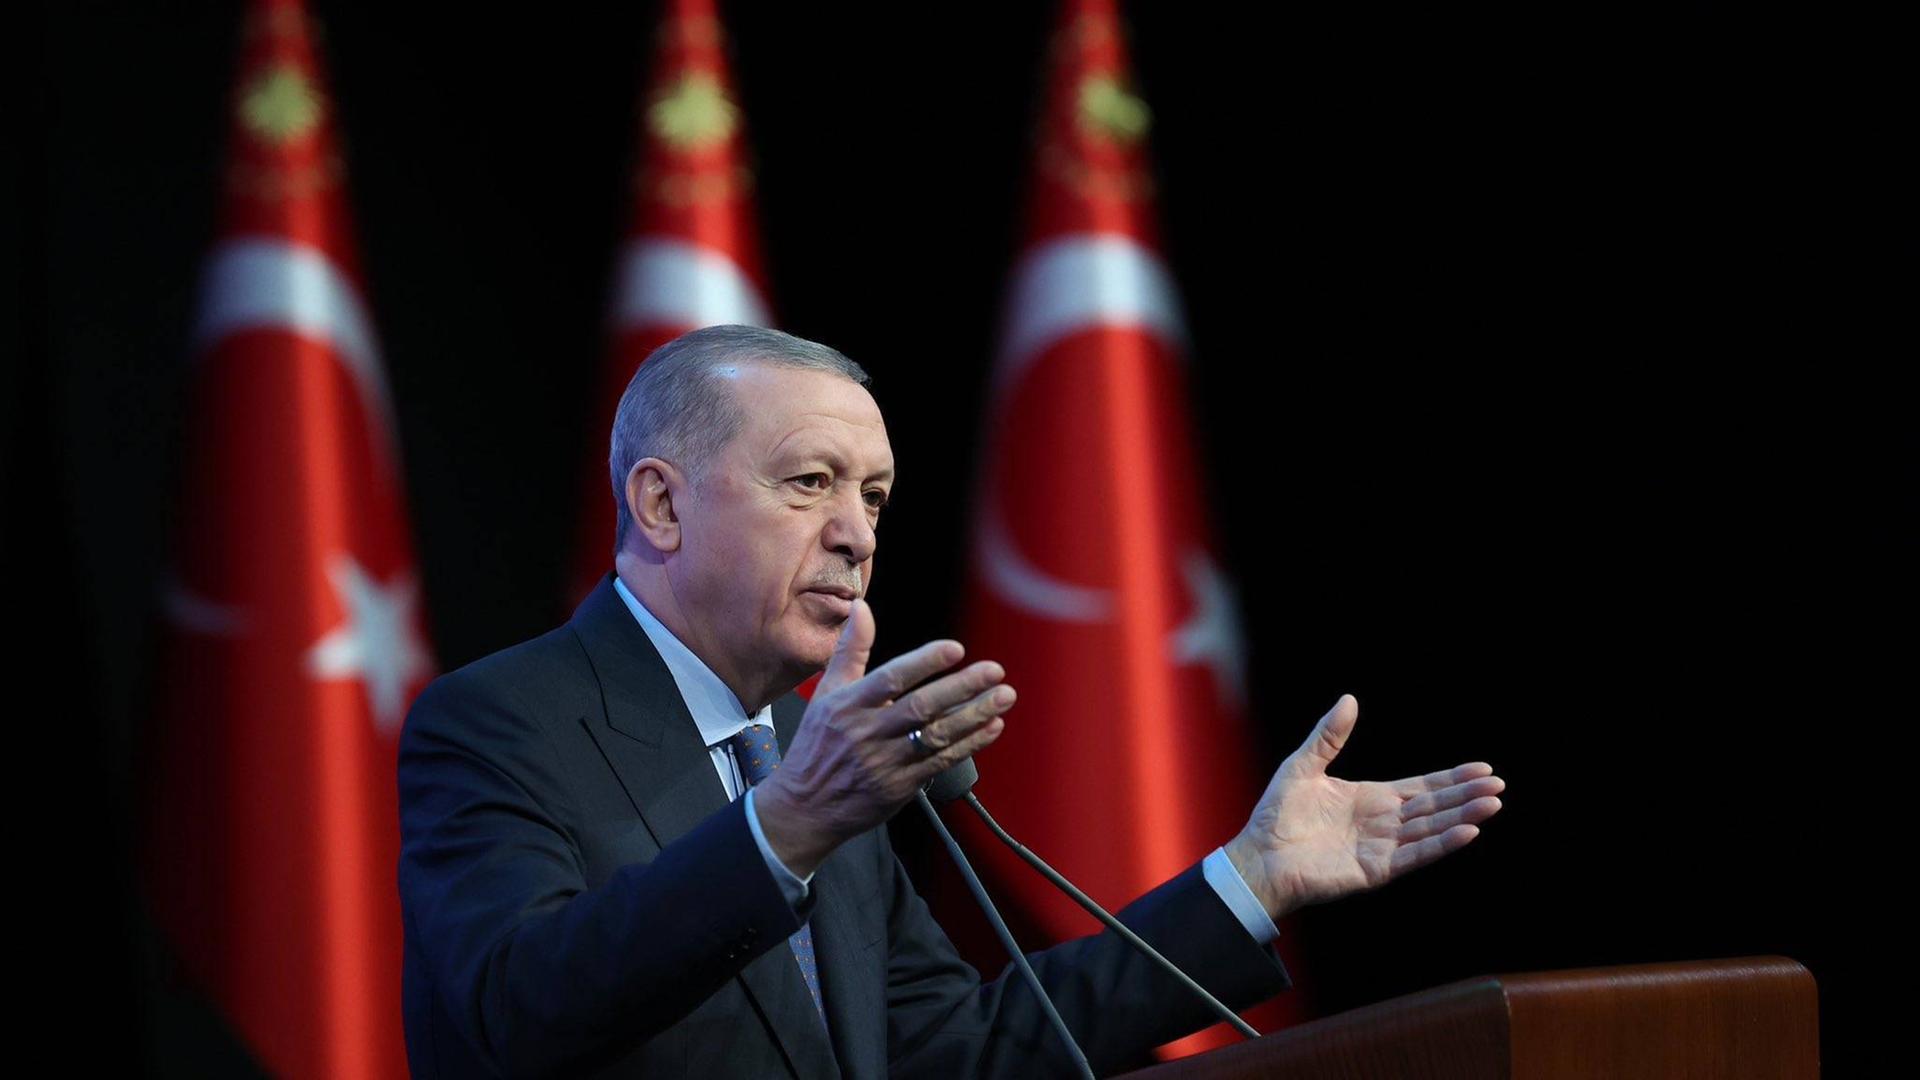 Recep Erdogan steht gestikulierend am Rednerpult; im Hintergrund stehen drei Türkeiflaggen.